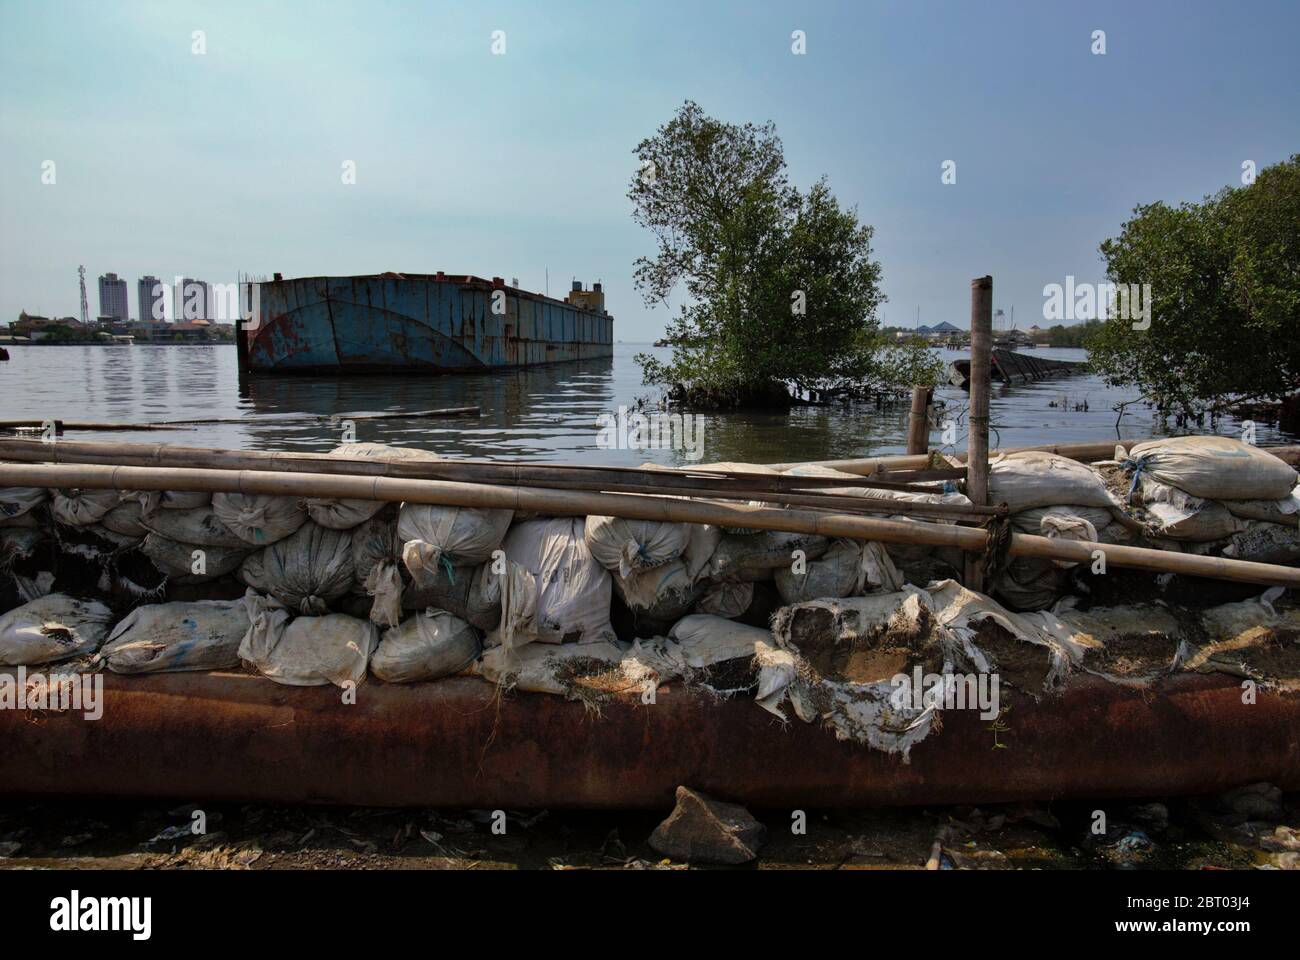 Une barge offshore flottant près d'une structure de défense côtière dans le village de Muara Baru, au nord de Jakarta, Jakarta, Indonésie. Photo d'archive. Banque D'Images